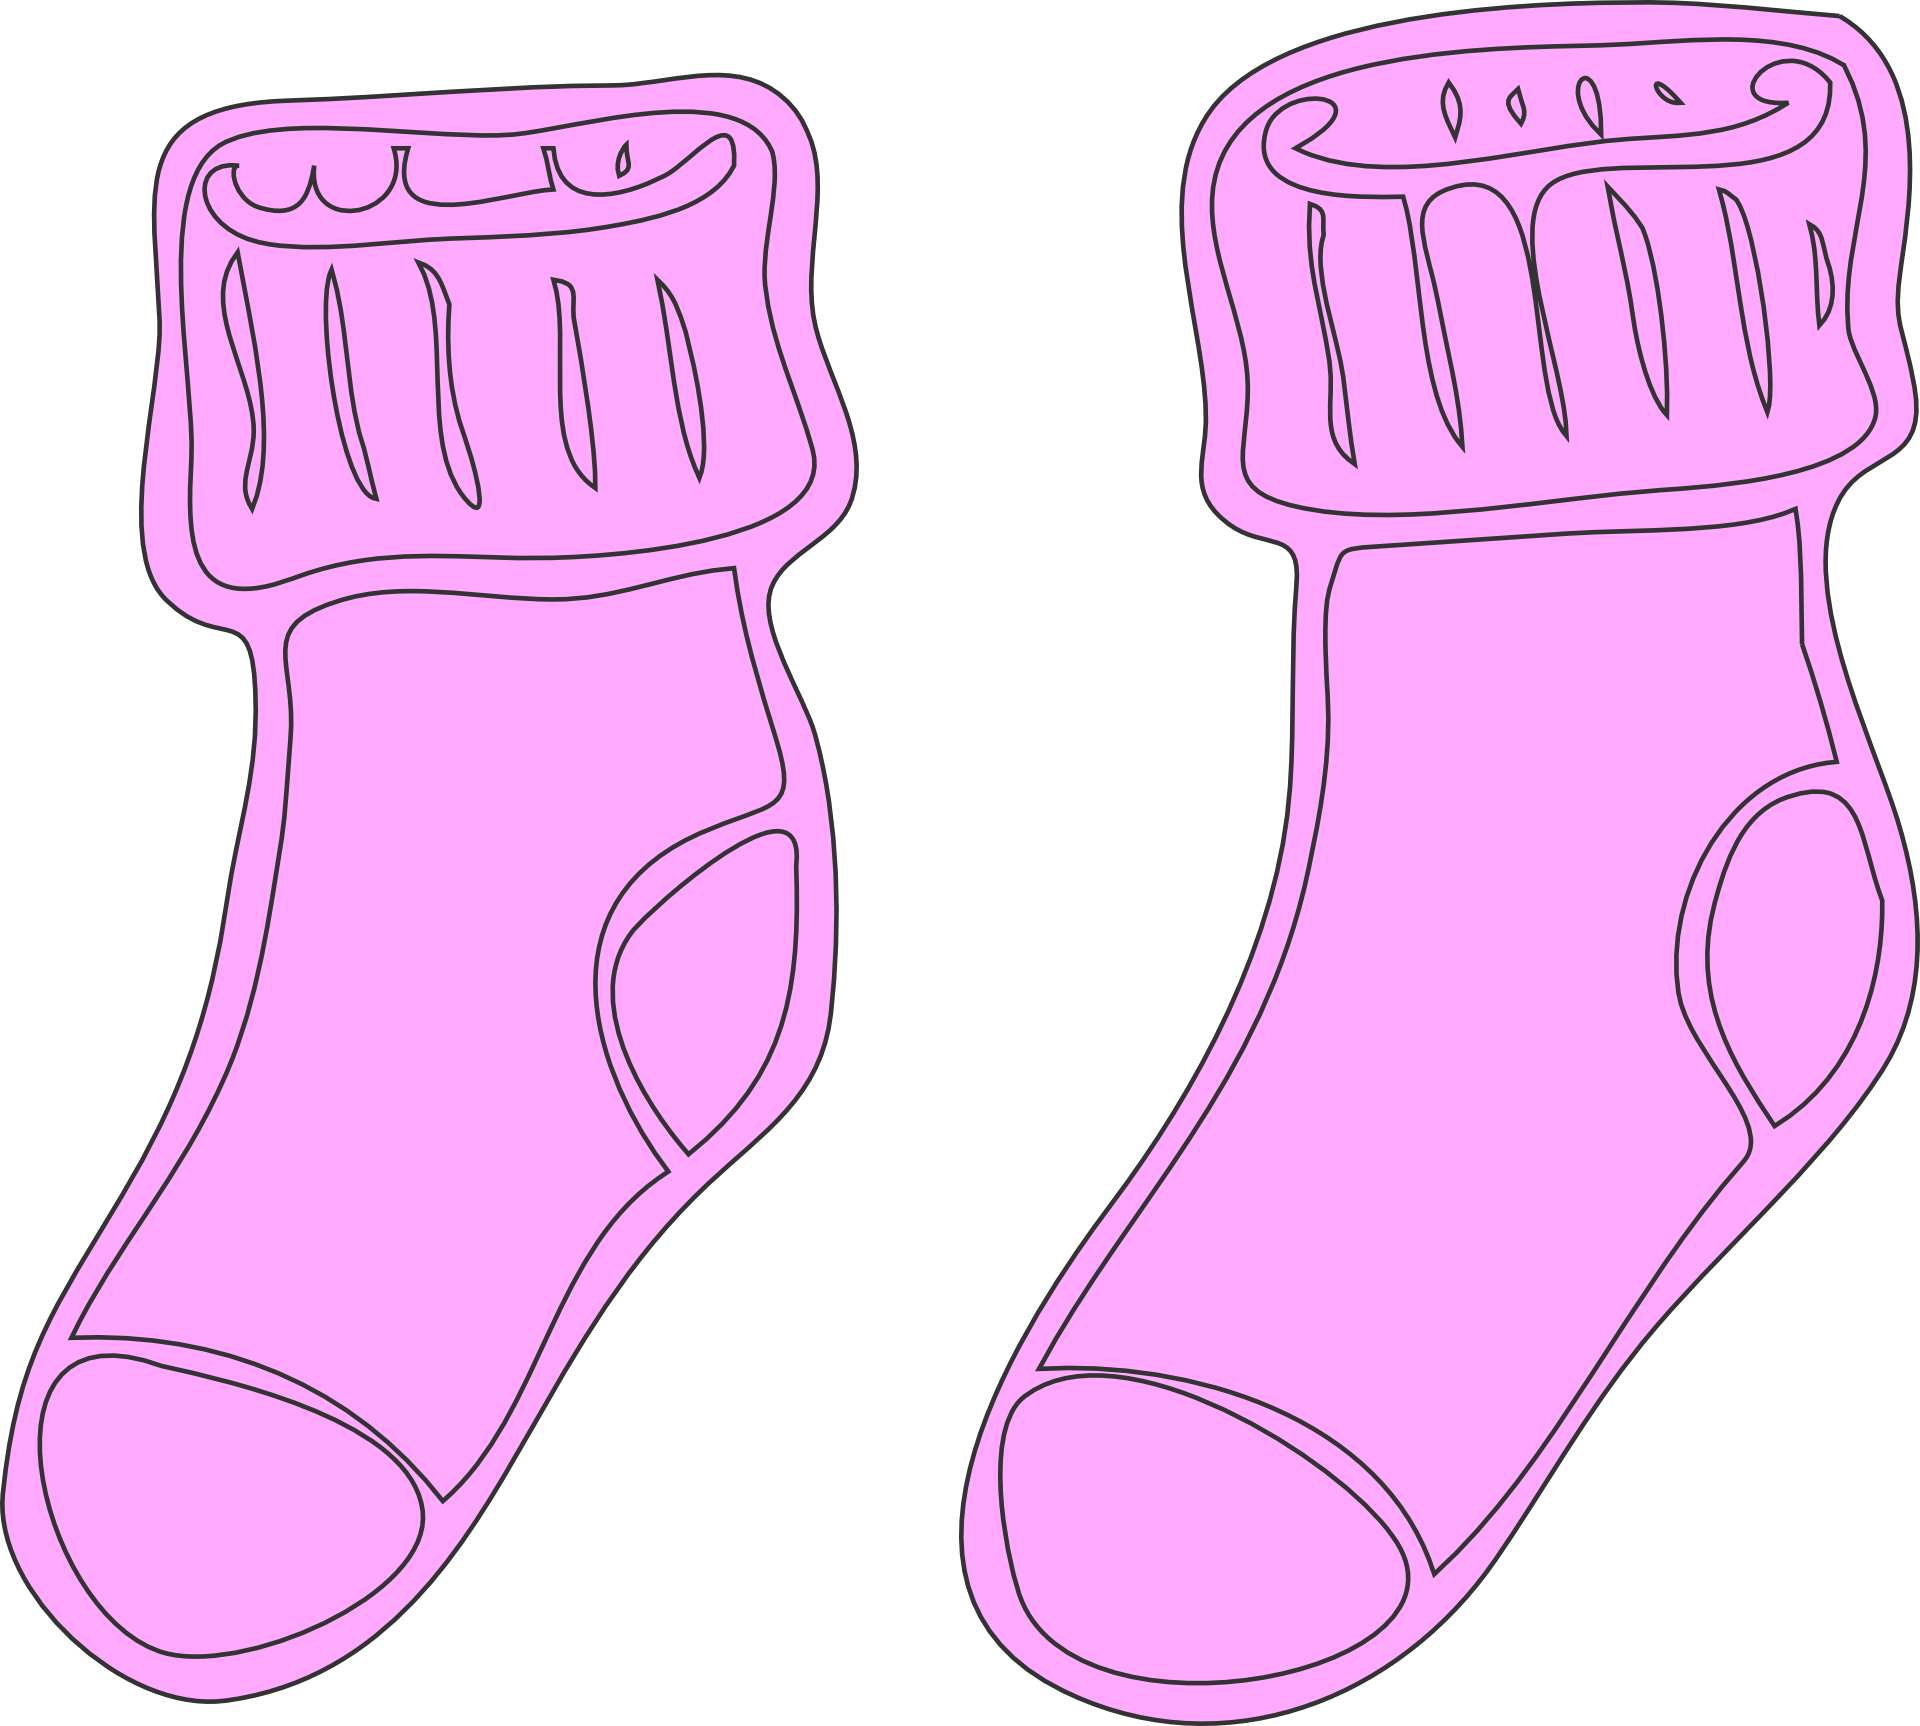 Pink warm socks drawing free image download